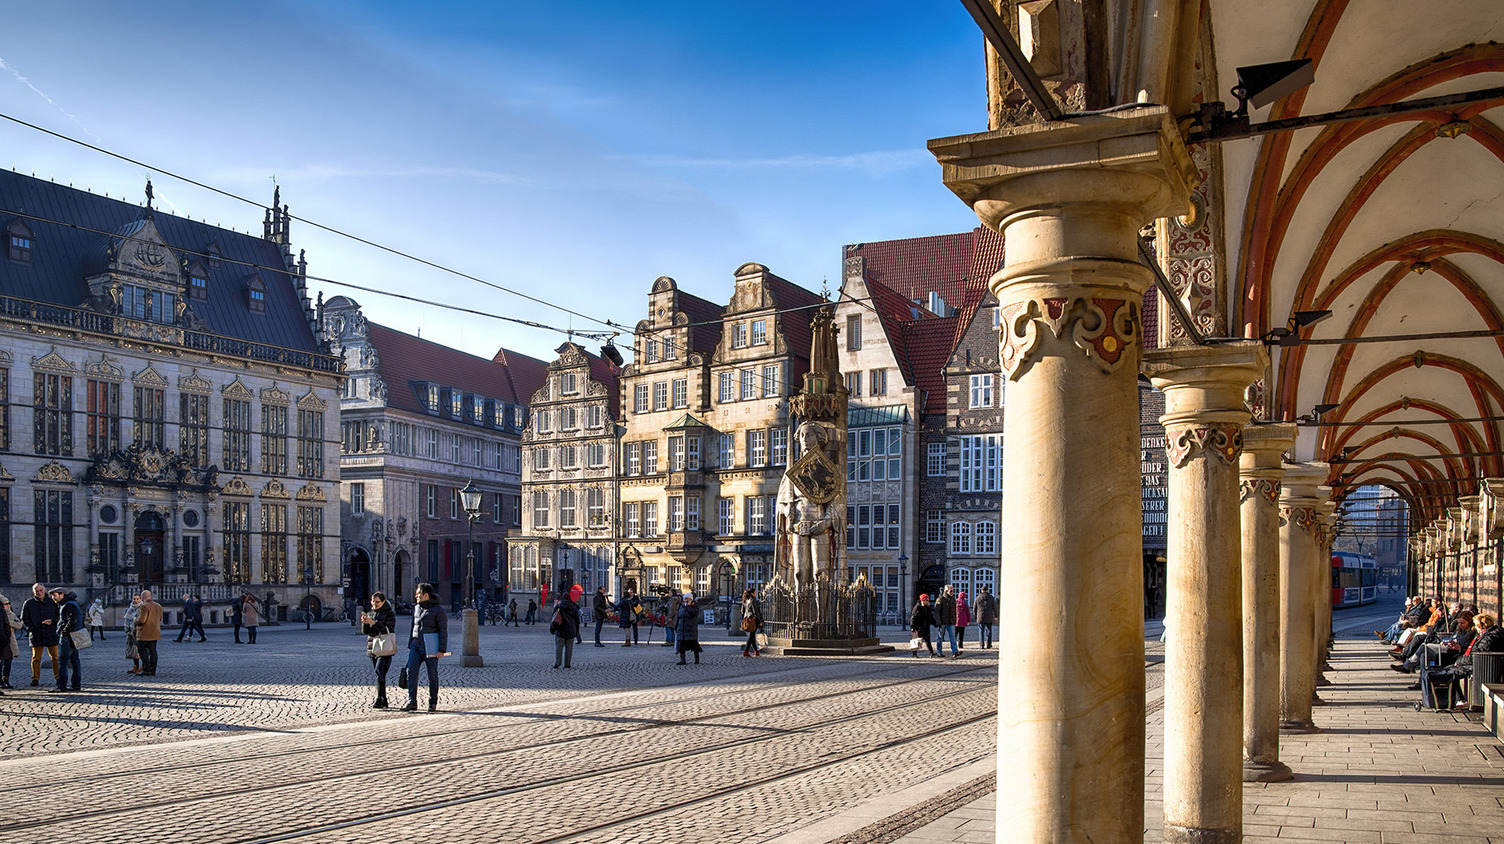 Ansicht des Bremer Marktplatz mit historischen Gebäuden